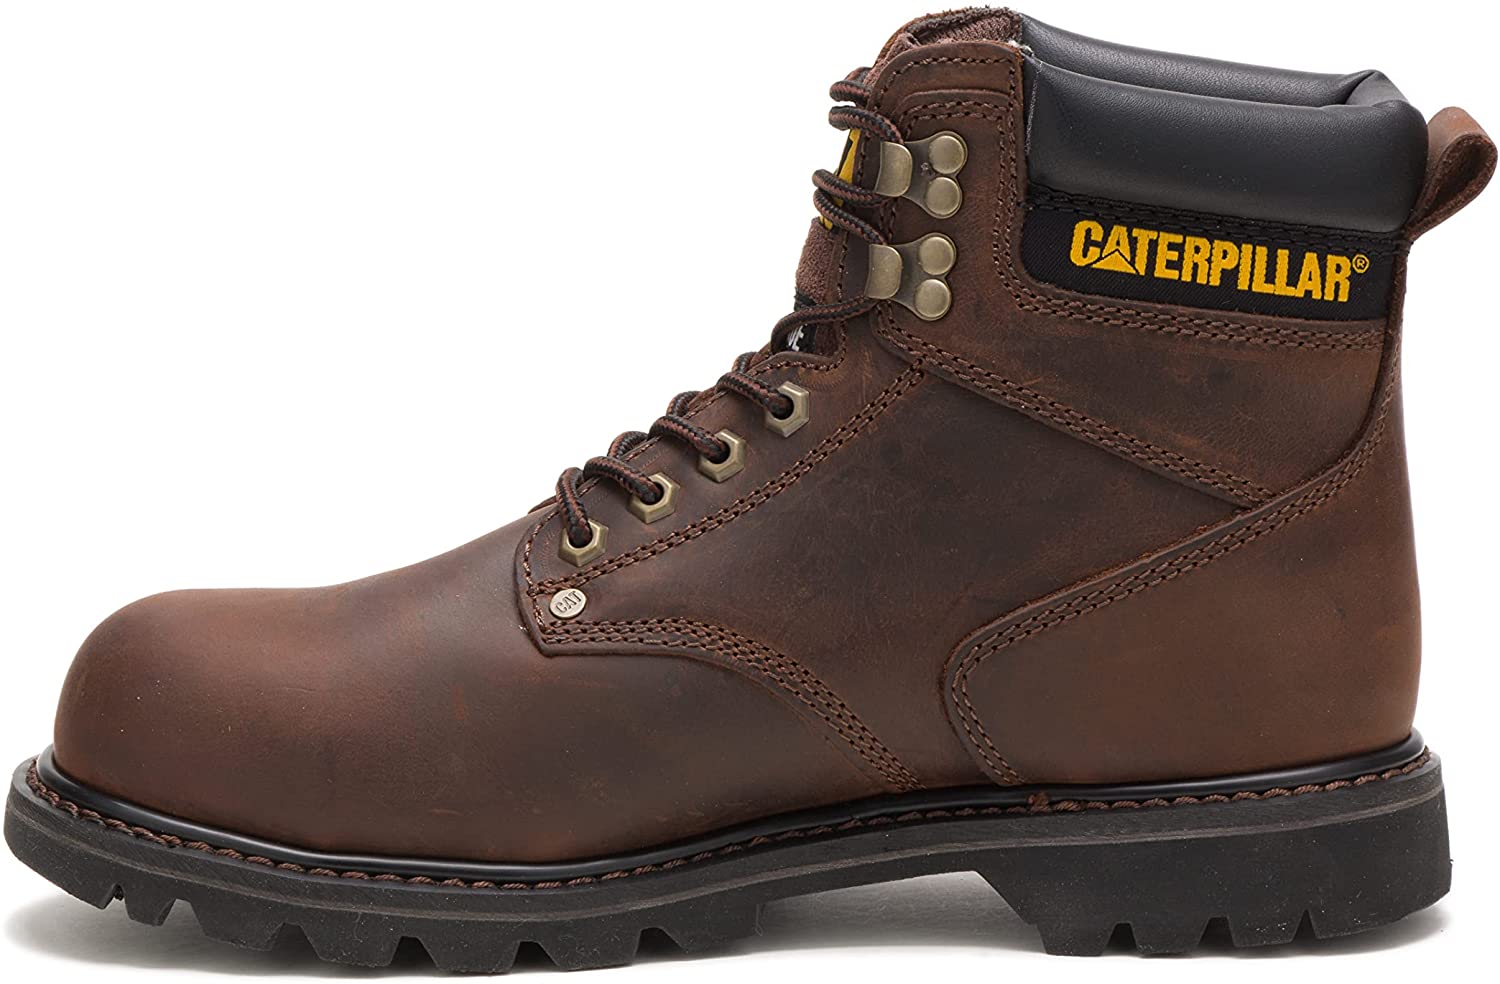 Caterpillar Second Shift P89586 Steel Toe Work Boot